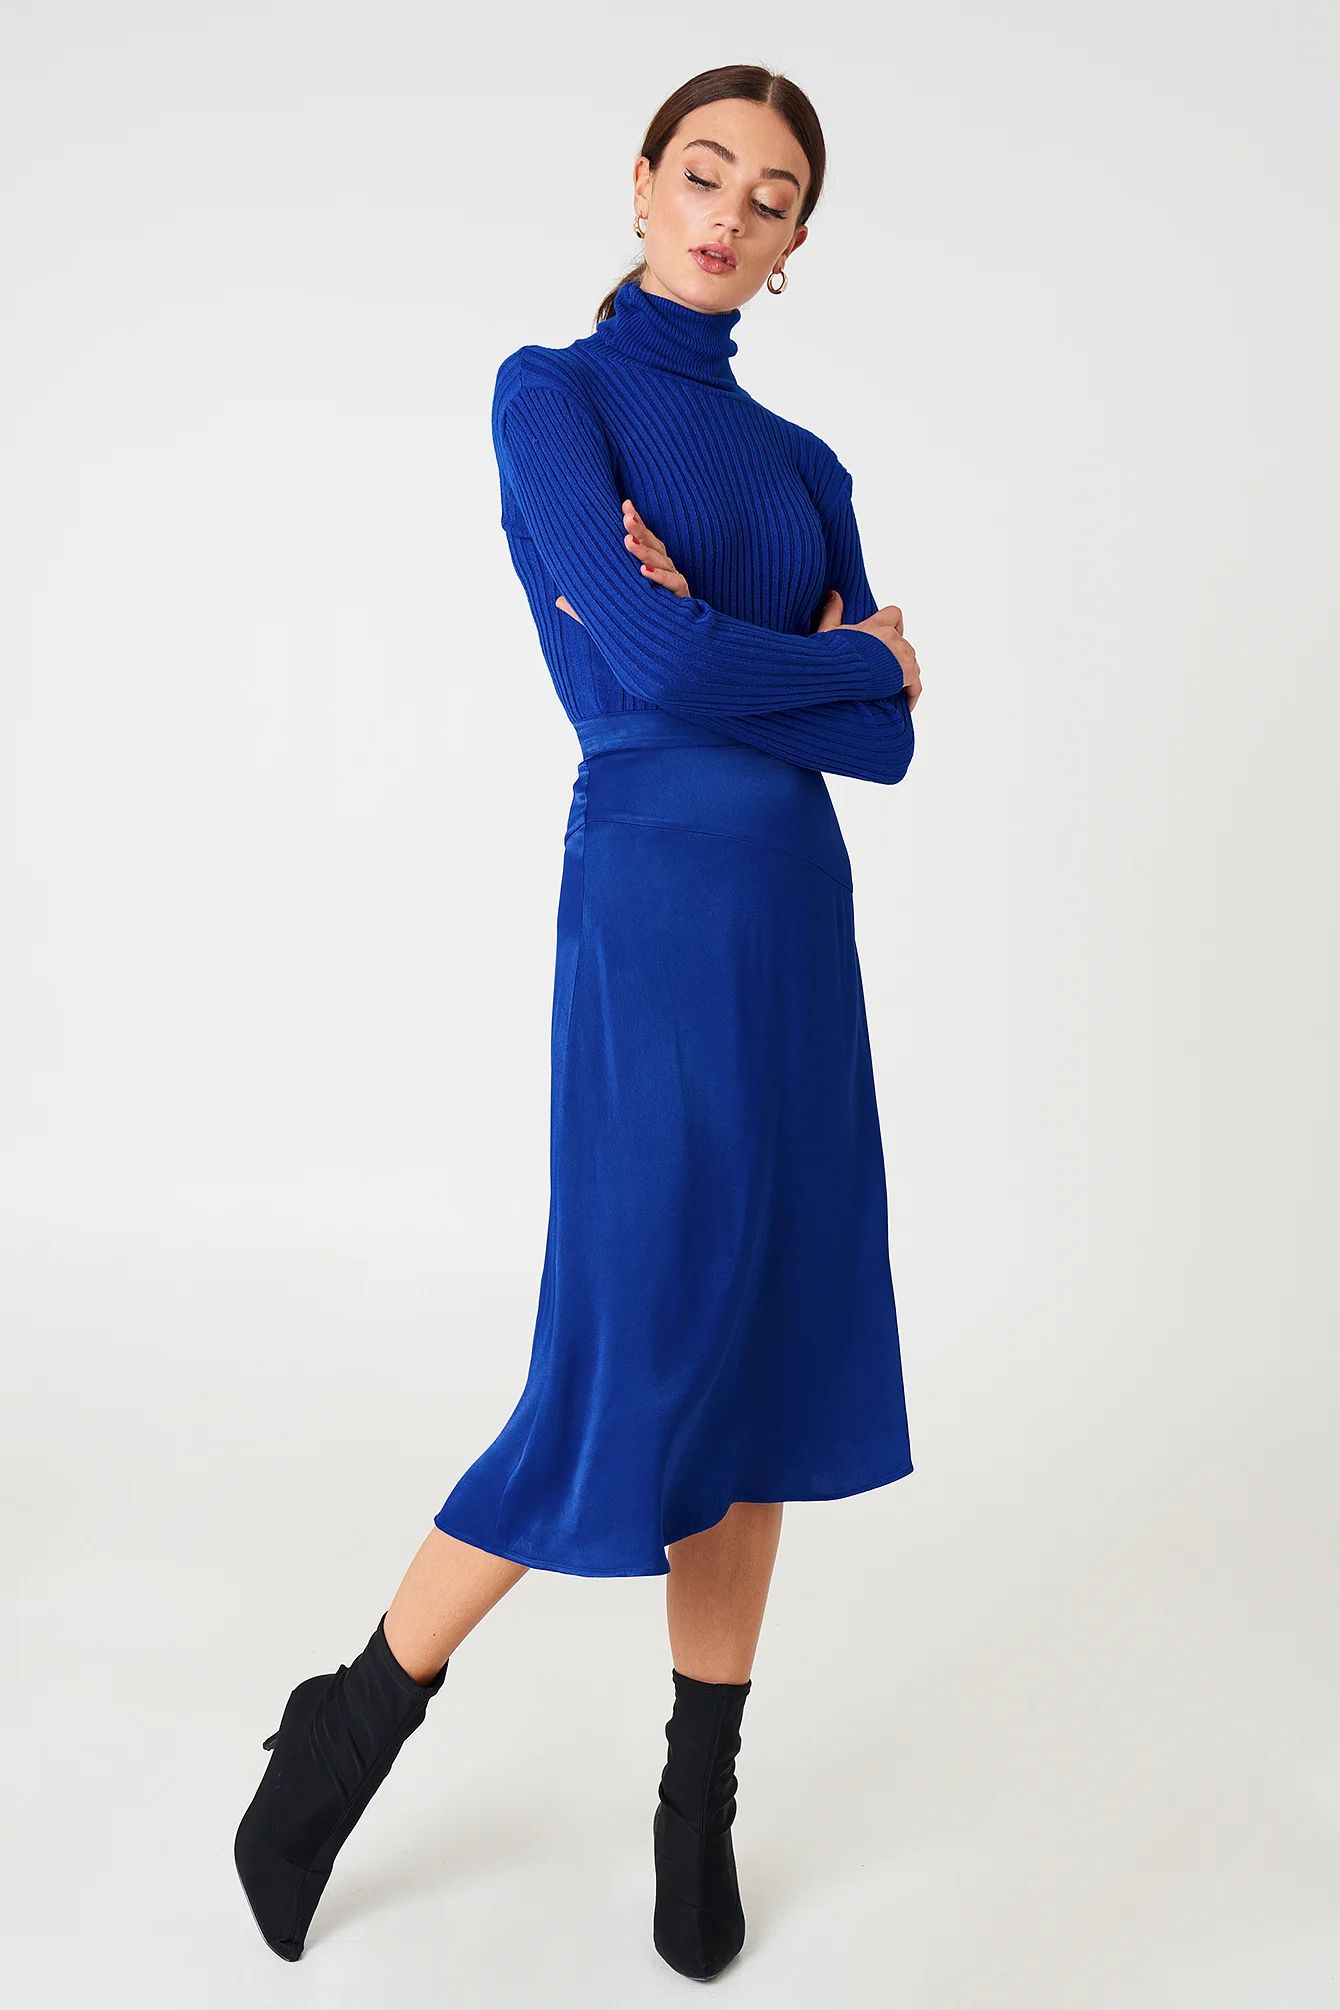 NA-KD Trend Satin Midi Skirt - Blue | NA-KD Global